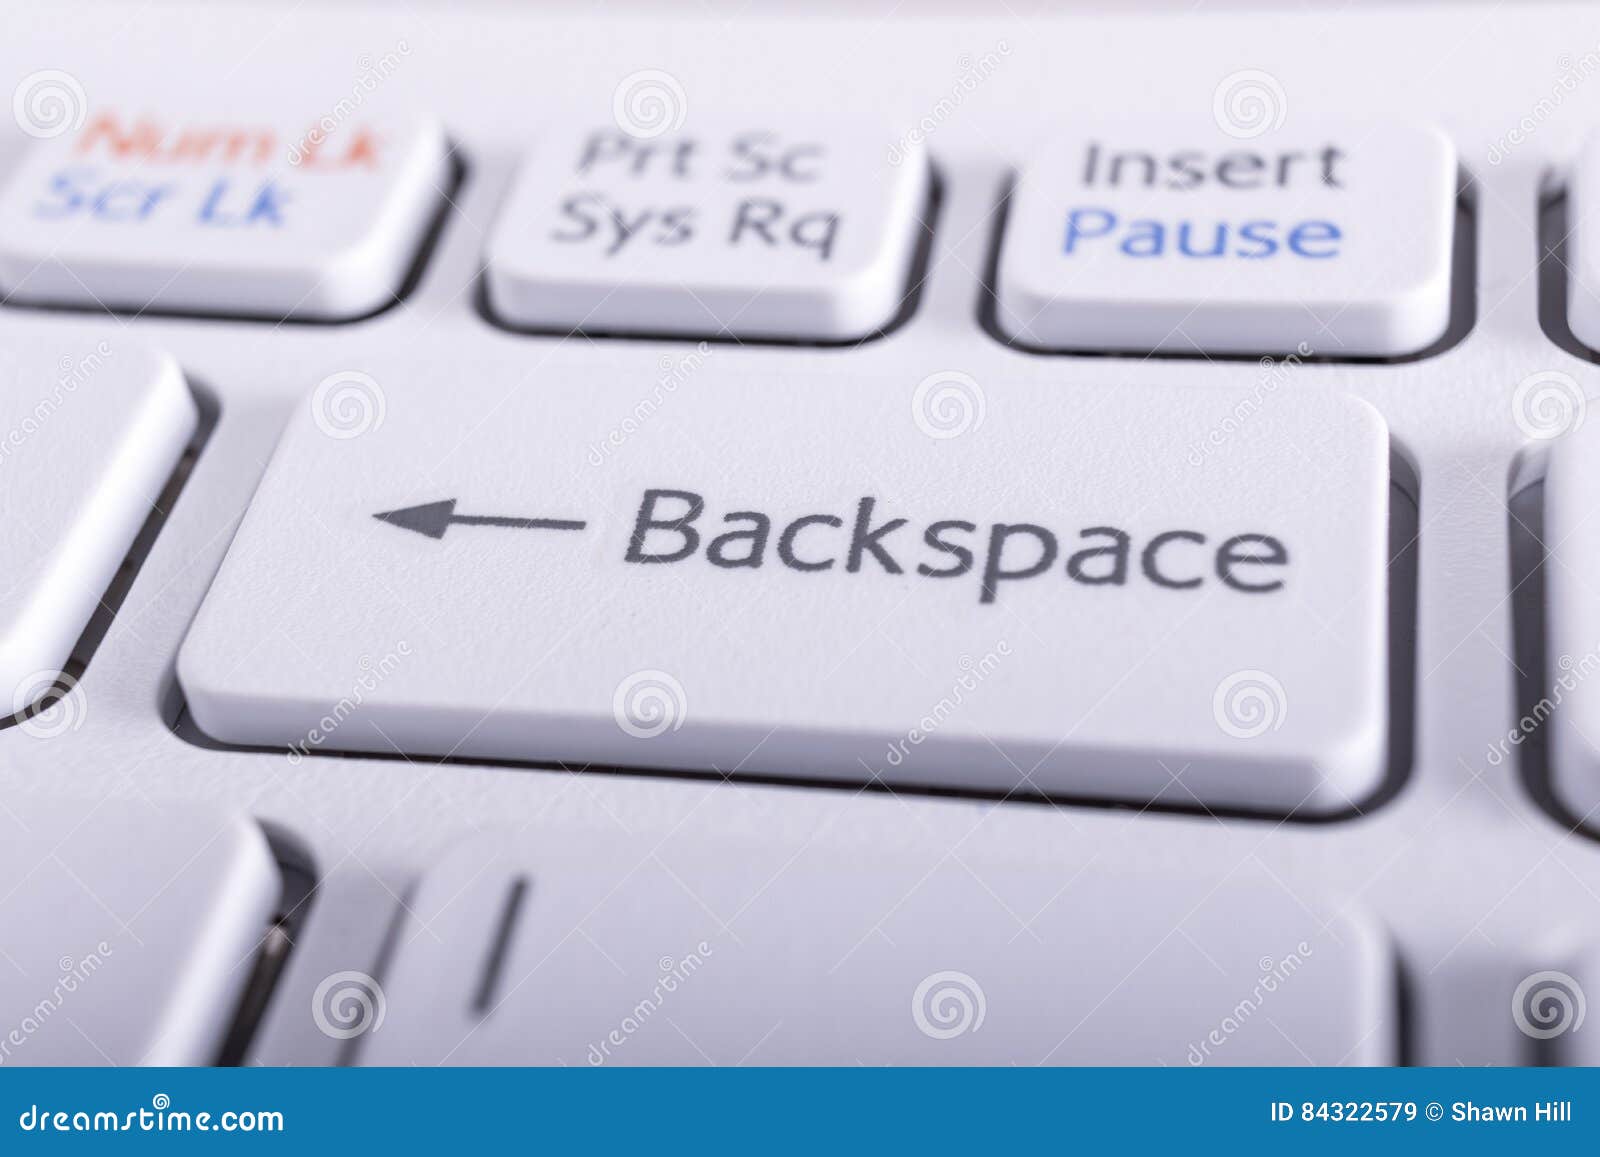 Бэкспейс на клавиатуре что это значит. Клавиши бэкспейс на клавиатуре. Кнопка Backspace. Клавиша Backspace на клавиатуре. Кнопка бекспейс на клавиатуре.